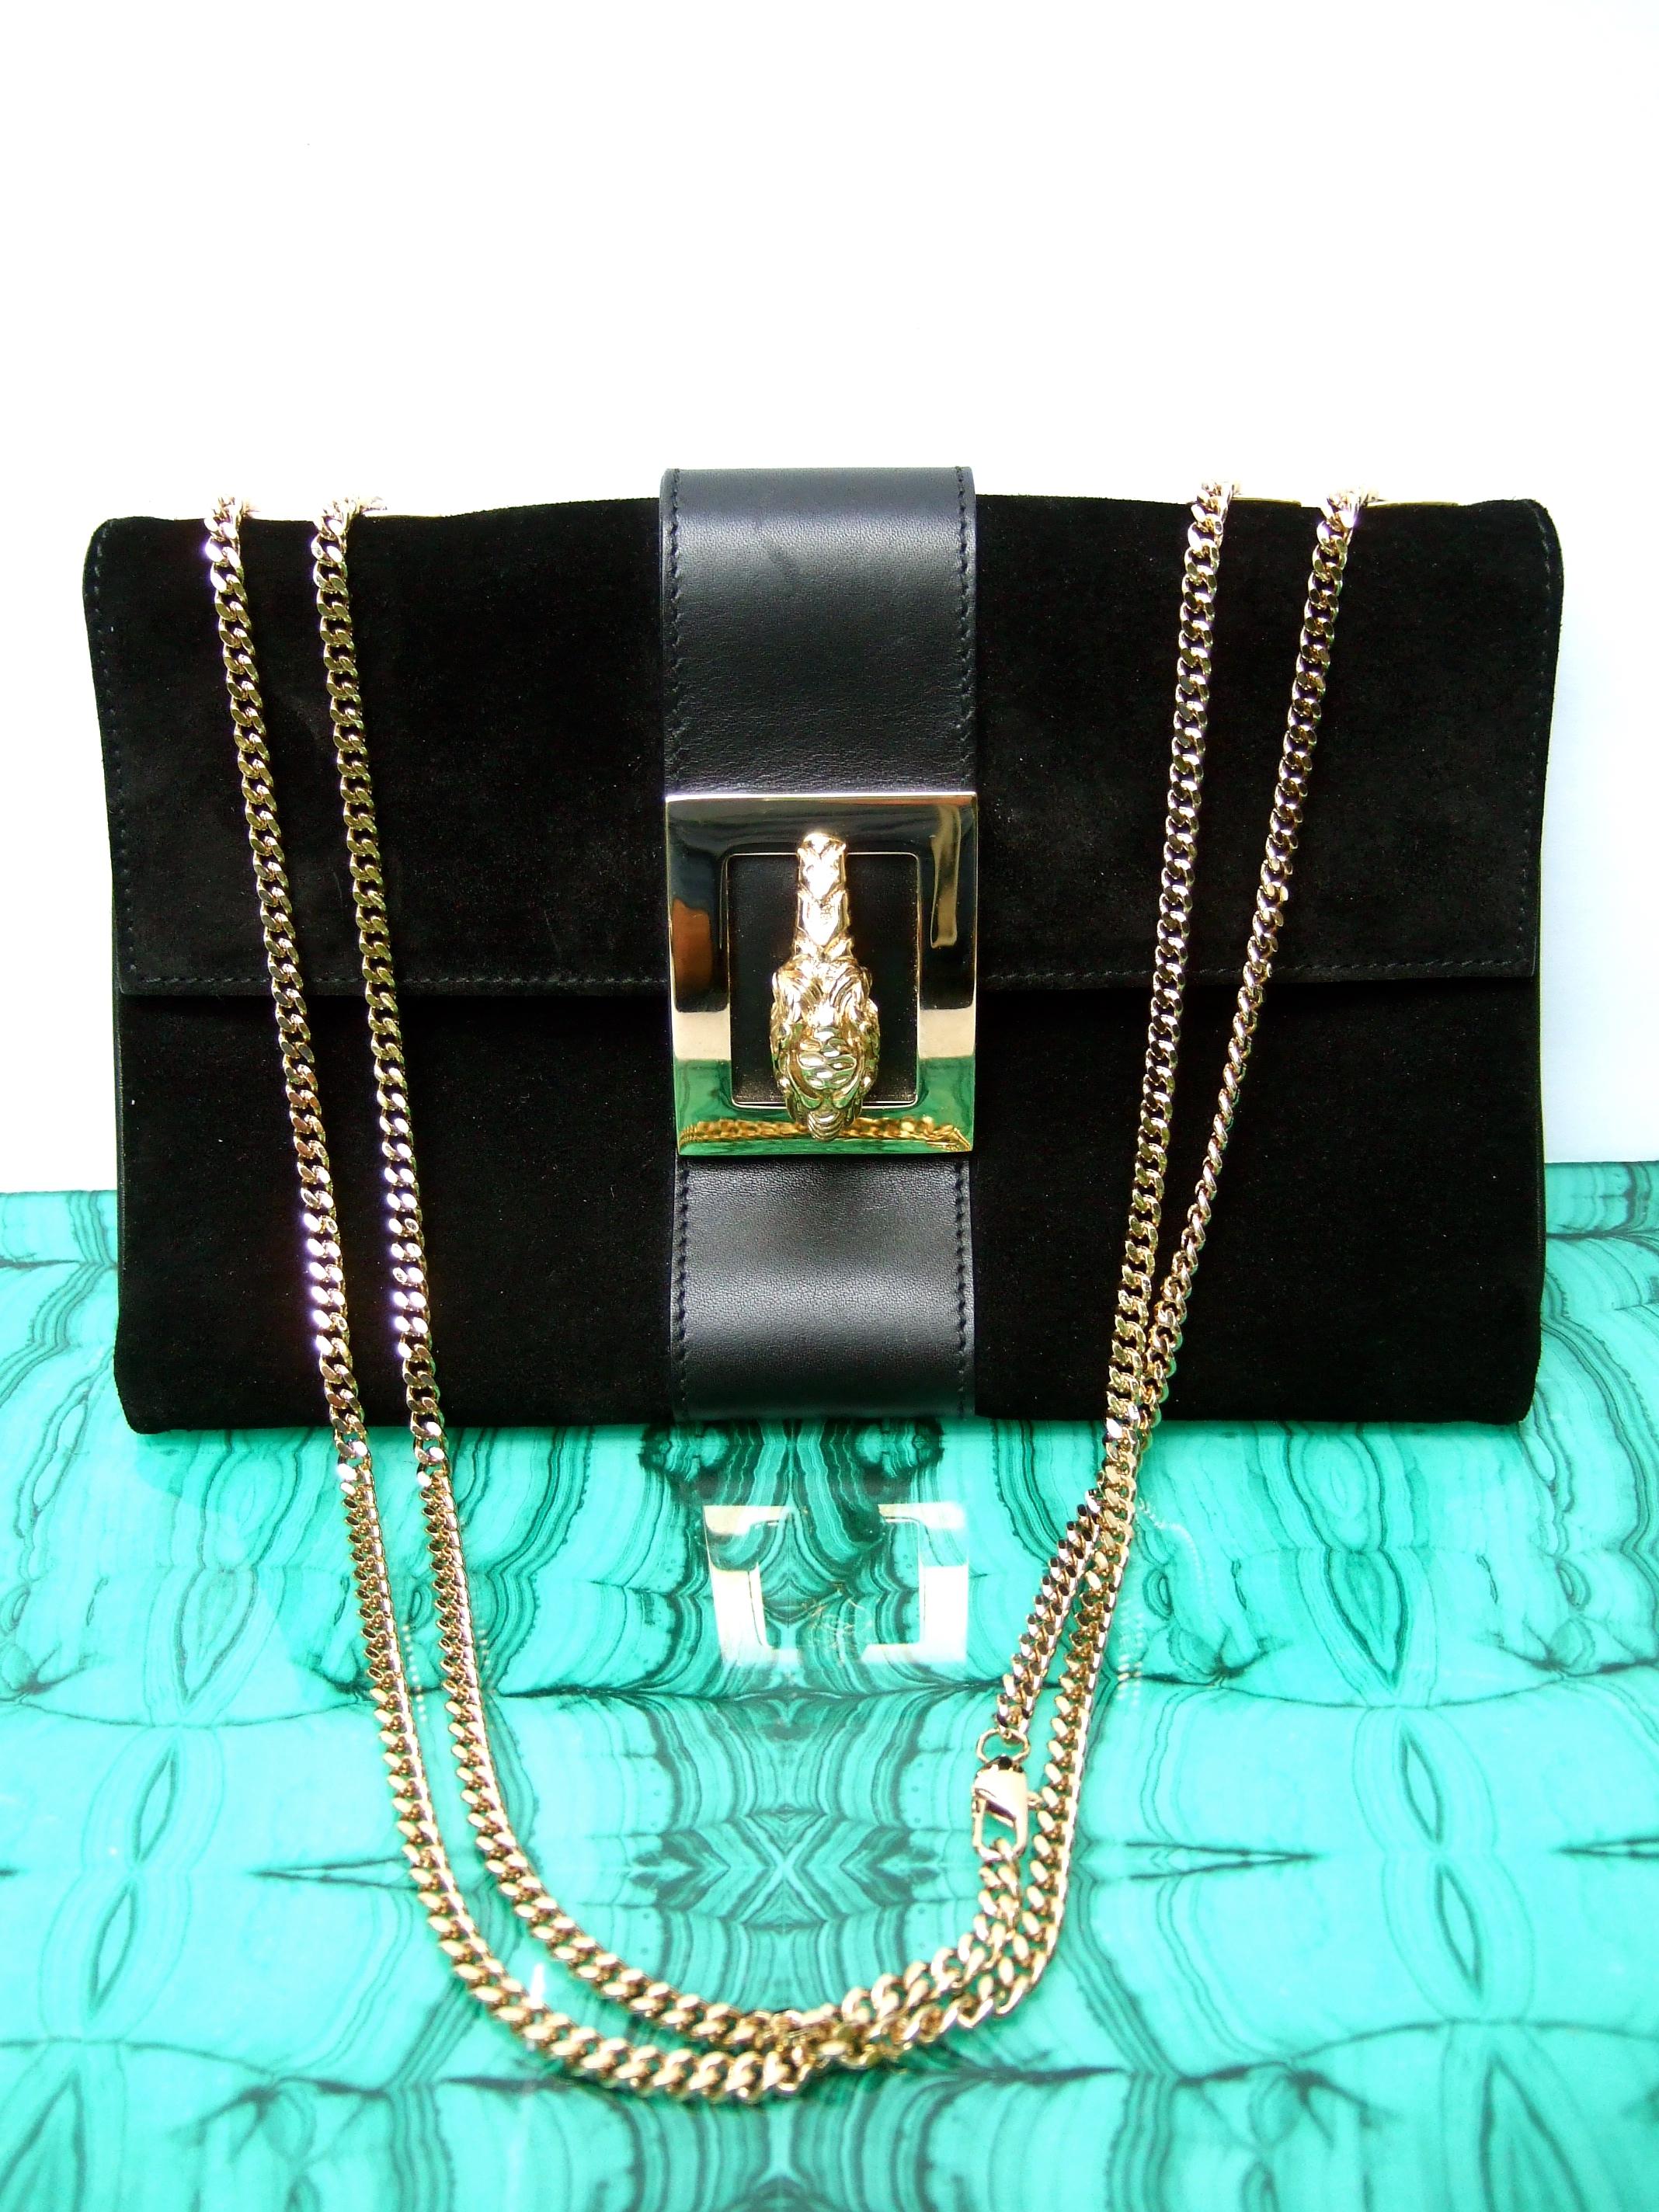 Gucci Italy Rare Black Suede Tiger Emblem Handbag Tom Ford Era c 2000 2